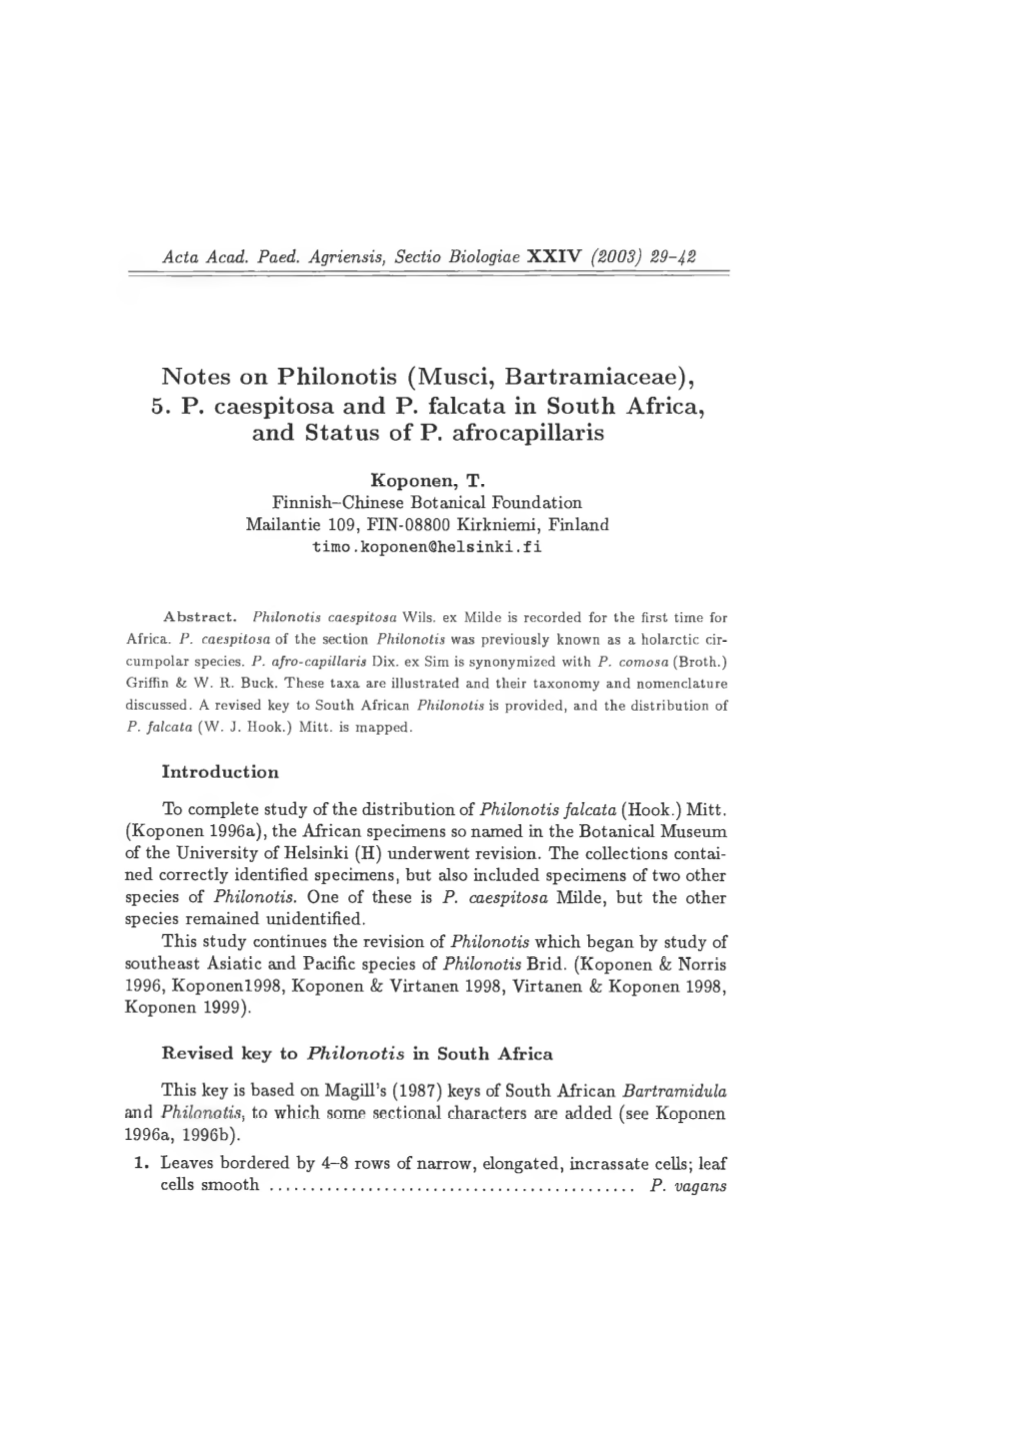 Notes on Philonotis (Musci, Bartramiaceae), 5